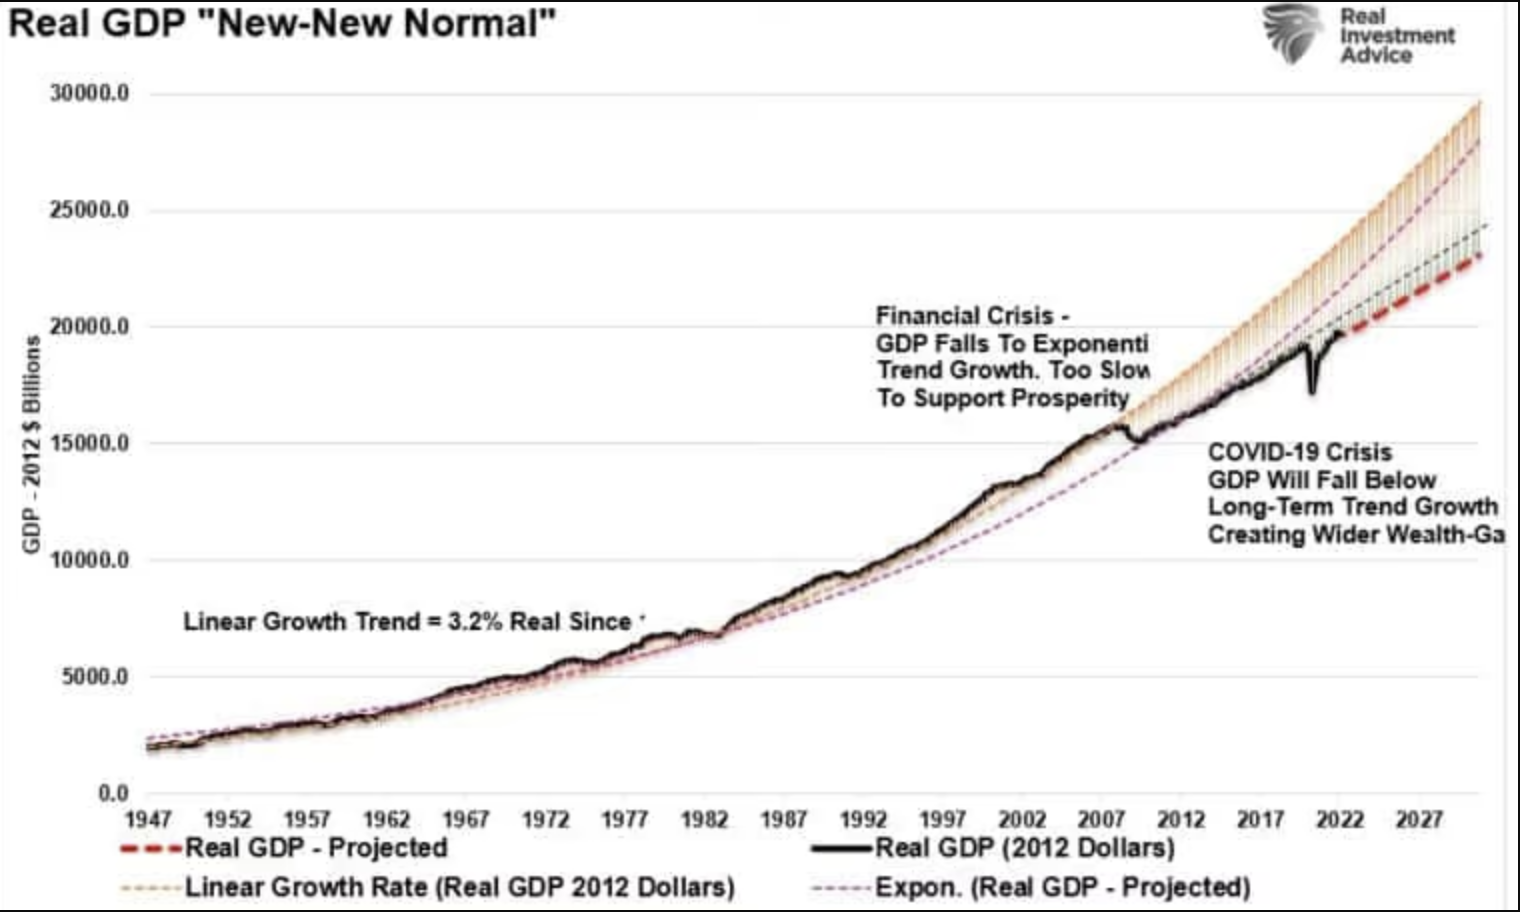 Reales BIP: Der neue normale Trend